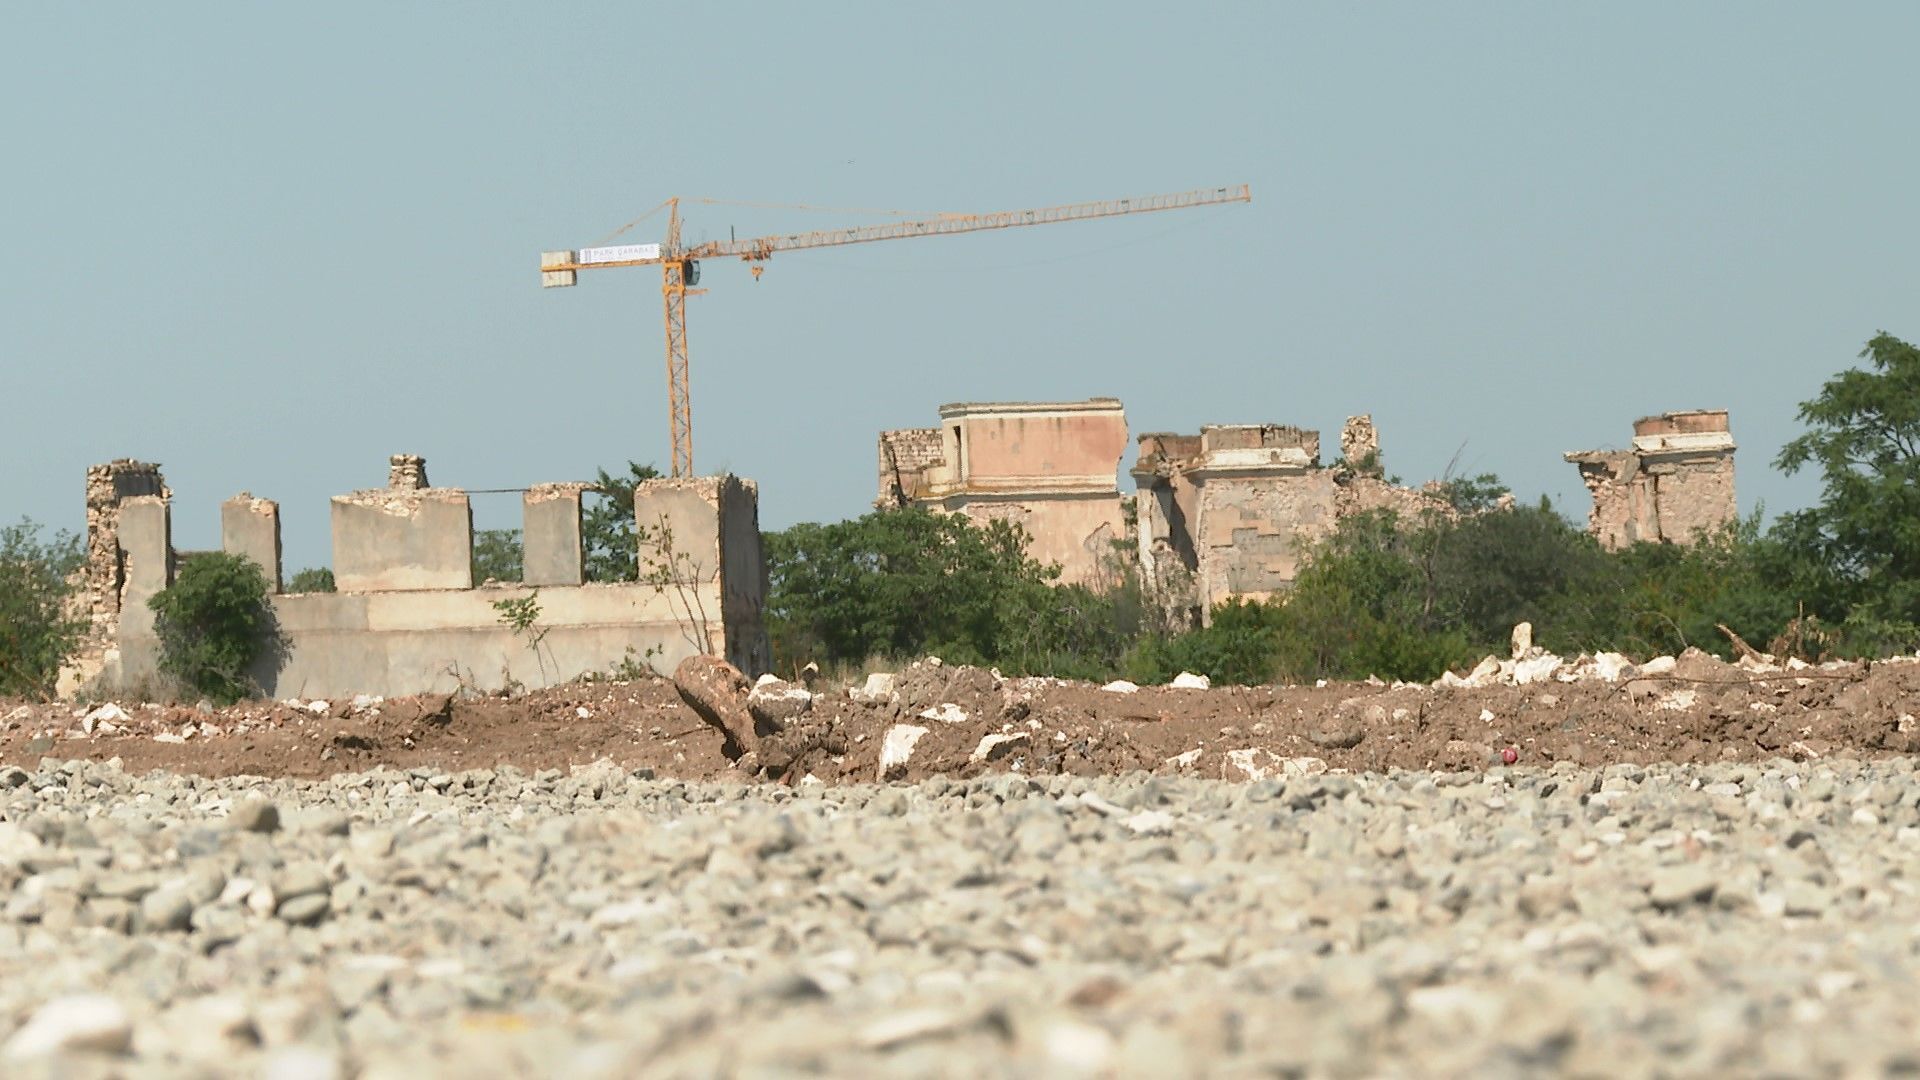 Восстанавливая из руин: строительные работы в Агдаме идут полным ходом - Sputnik Азербайджан, 1920, 04.06.2021